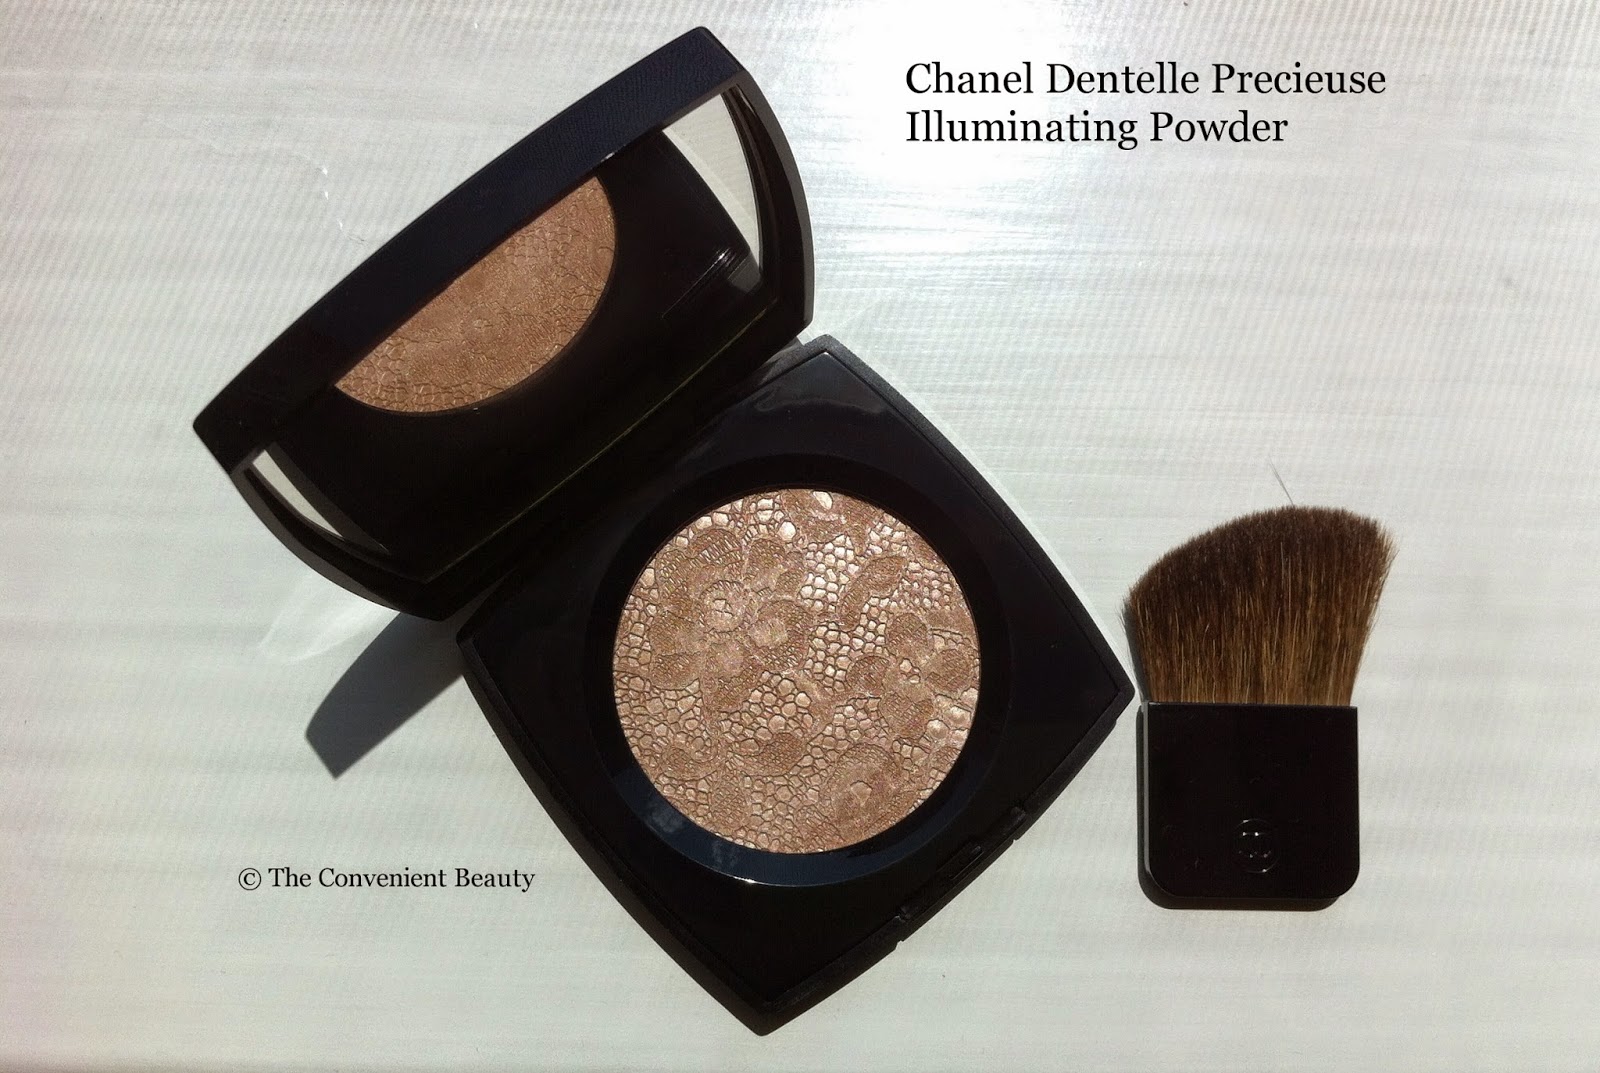 The Convenient Beauty: Review: Chanel Dentelle Precieuse